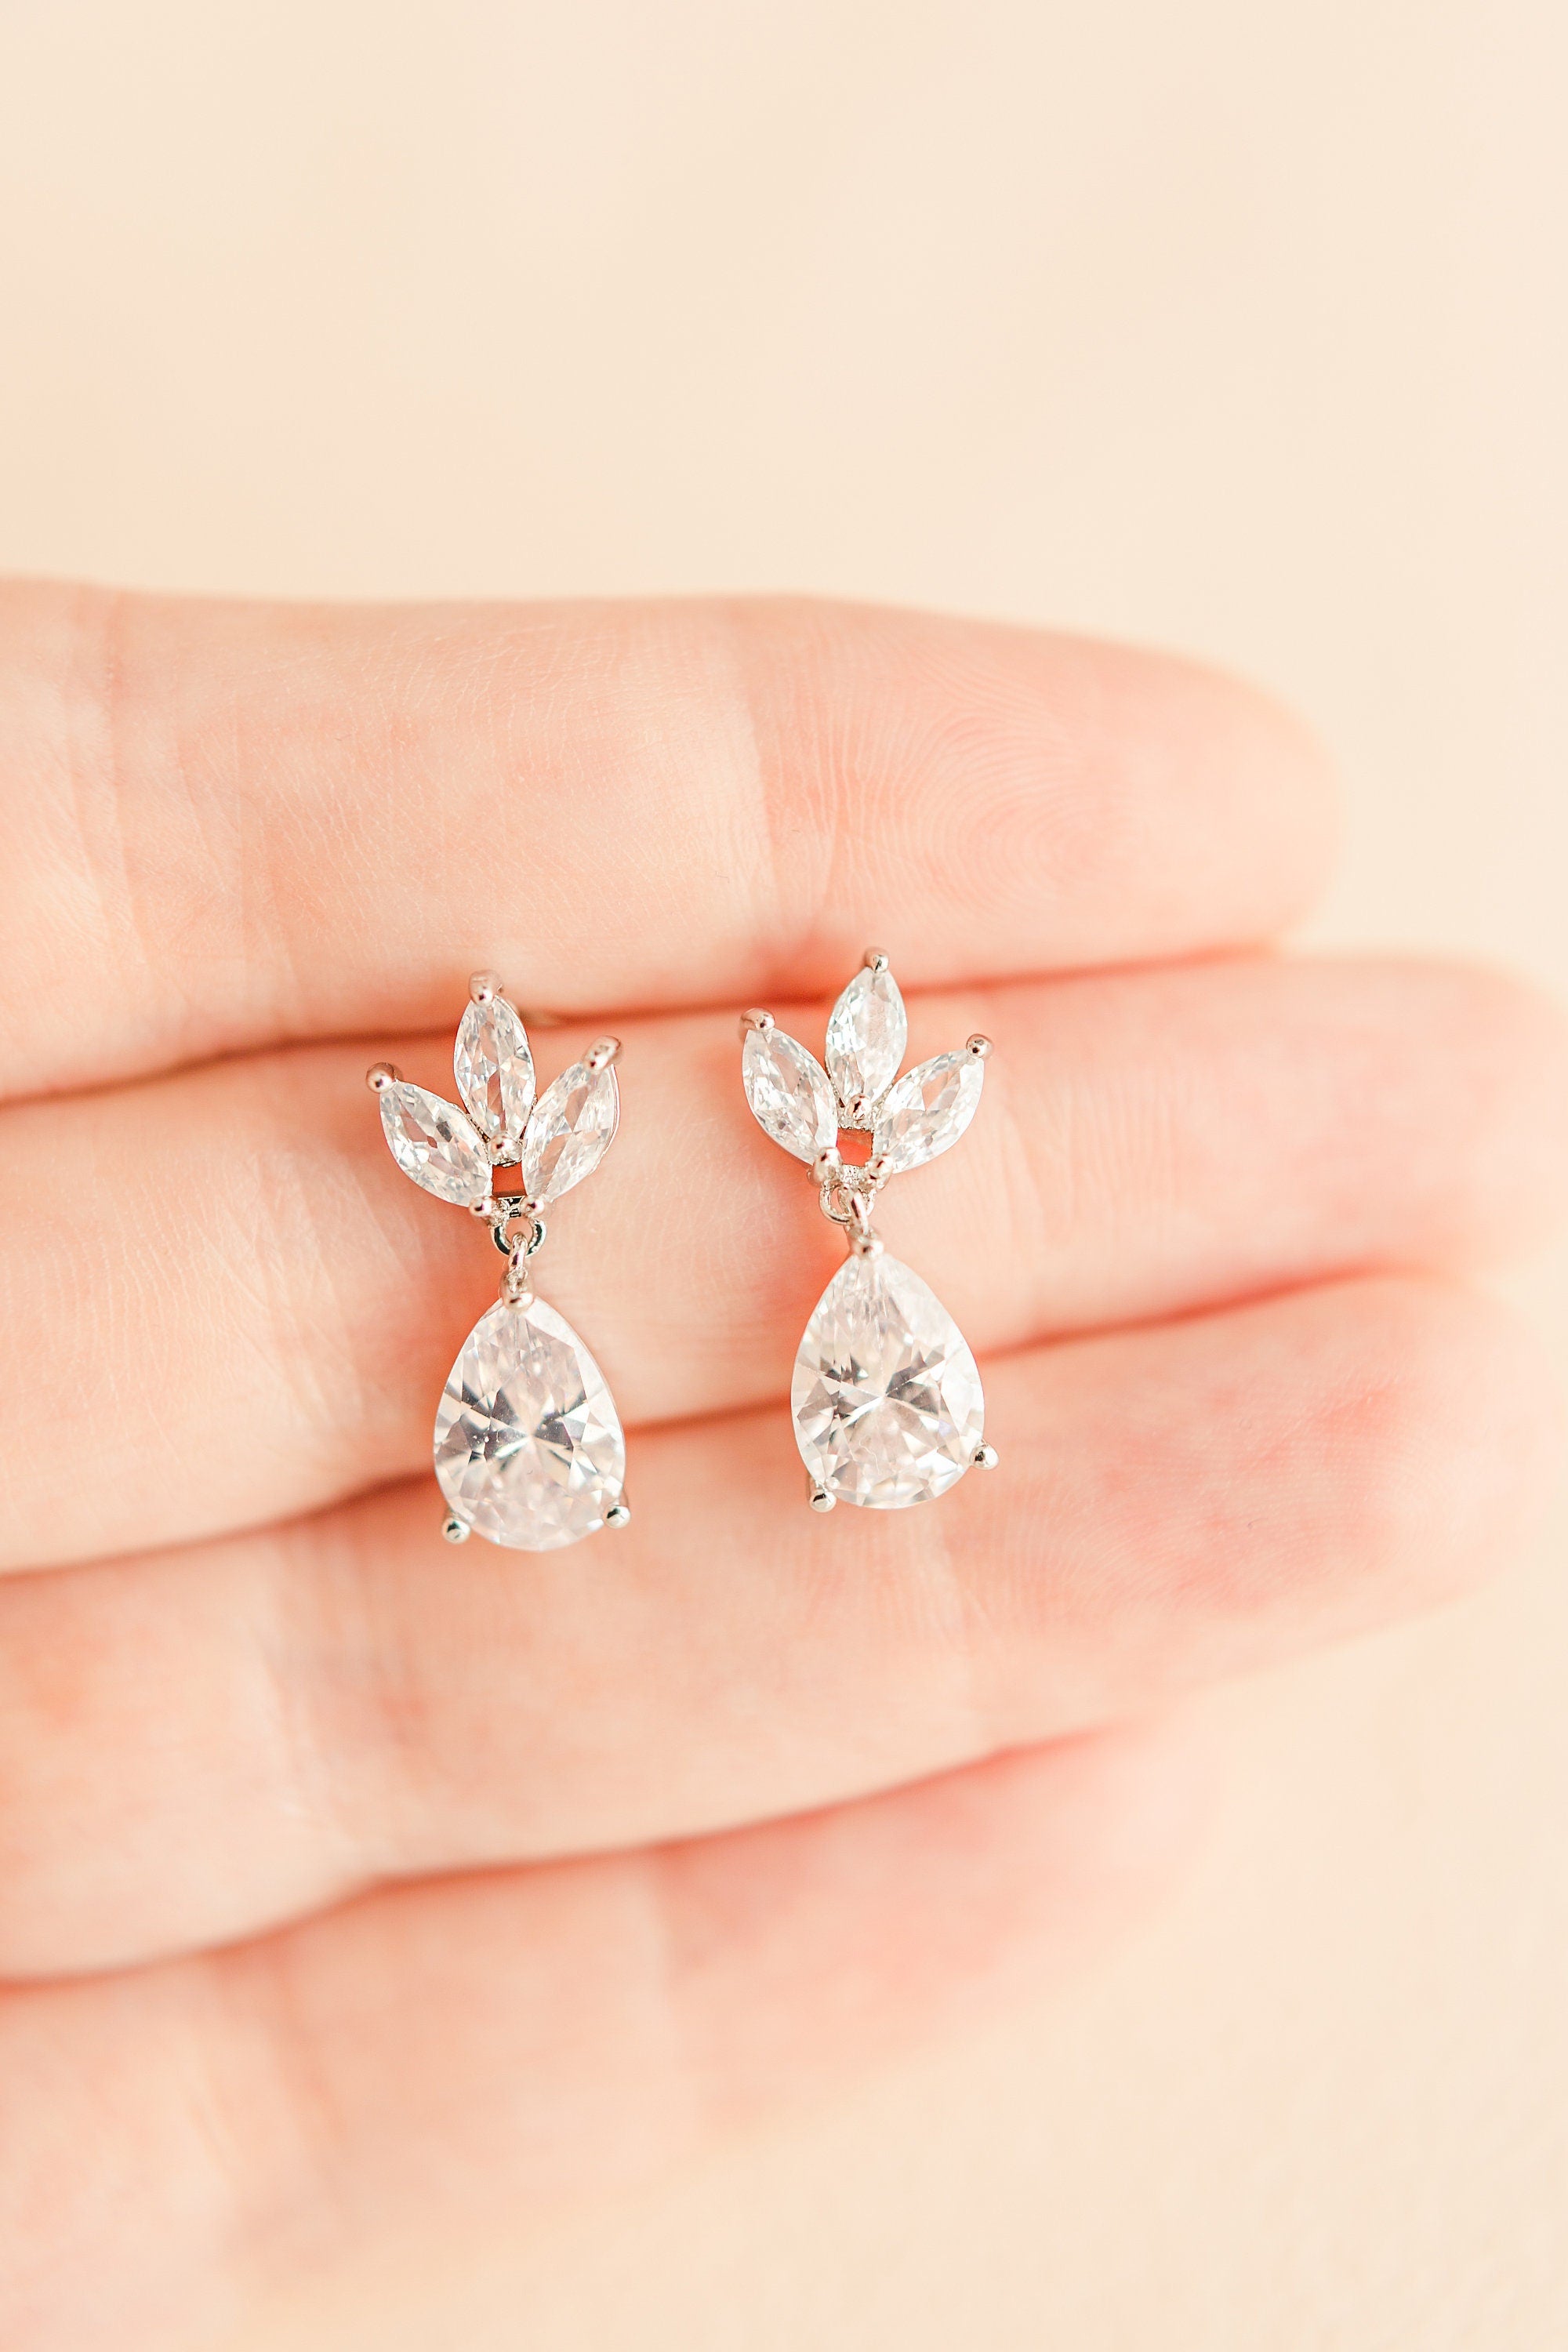 EVIE // Dainty cubic zirconia earrings